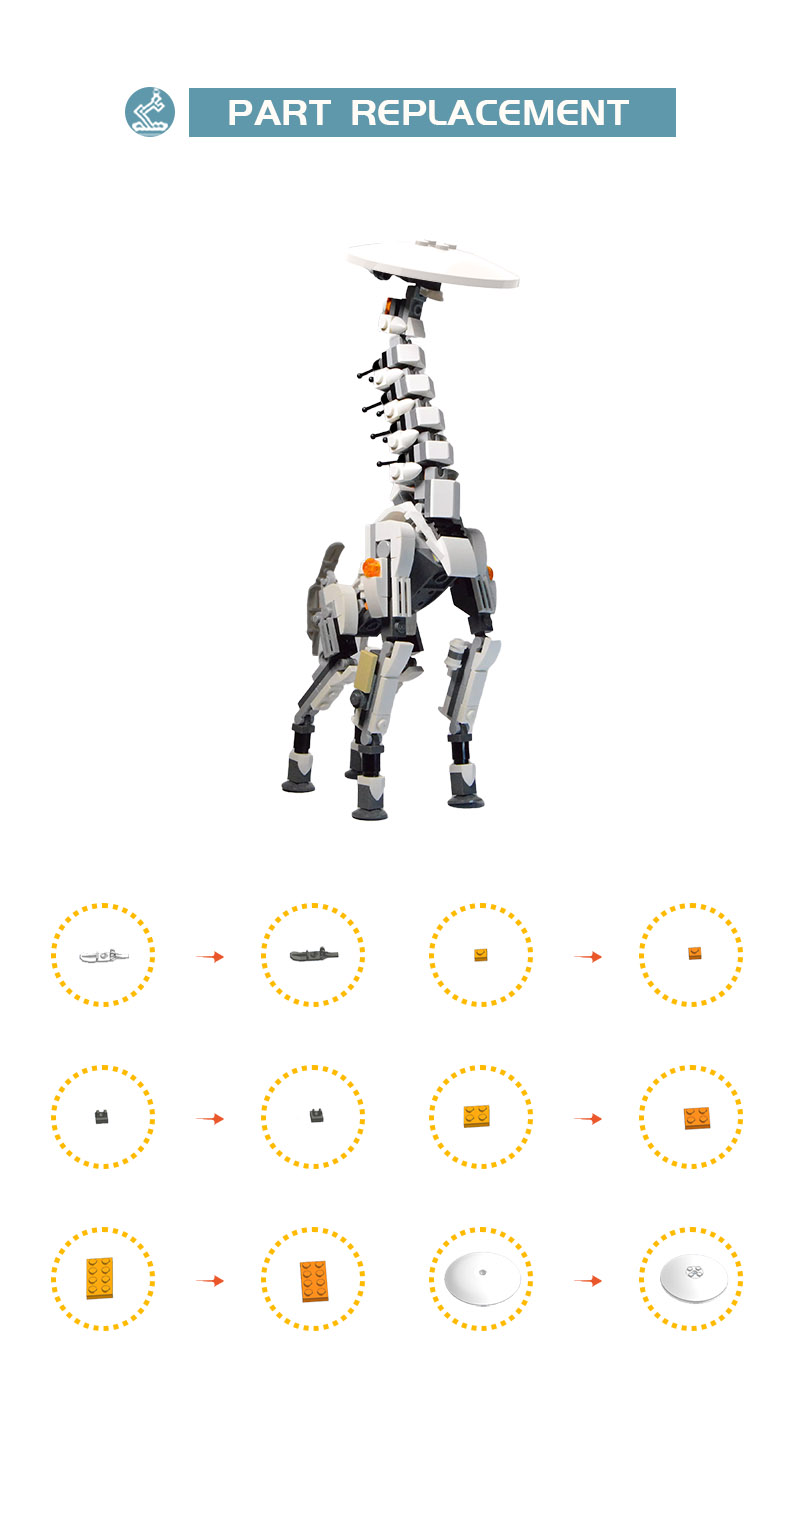 Horizon Zero Dawn Tallneck Robot MOC-89503 Creator With 238 Pieces